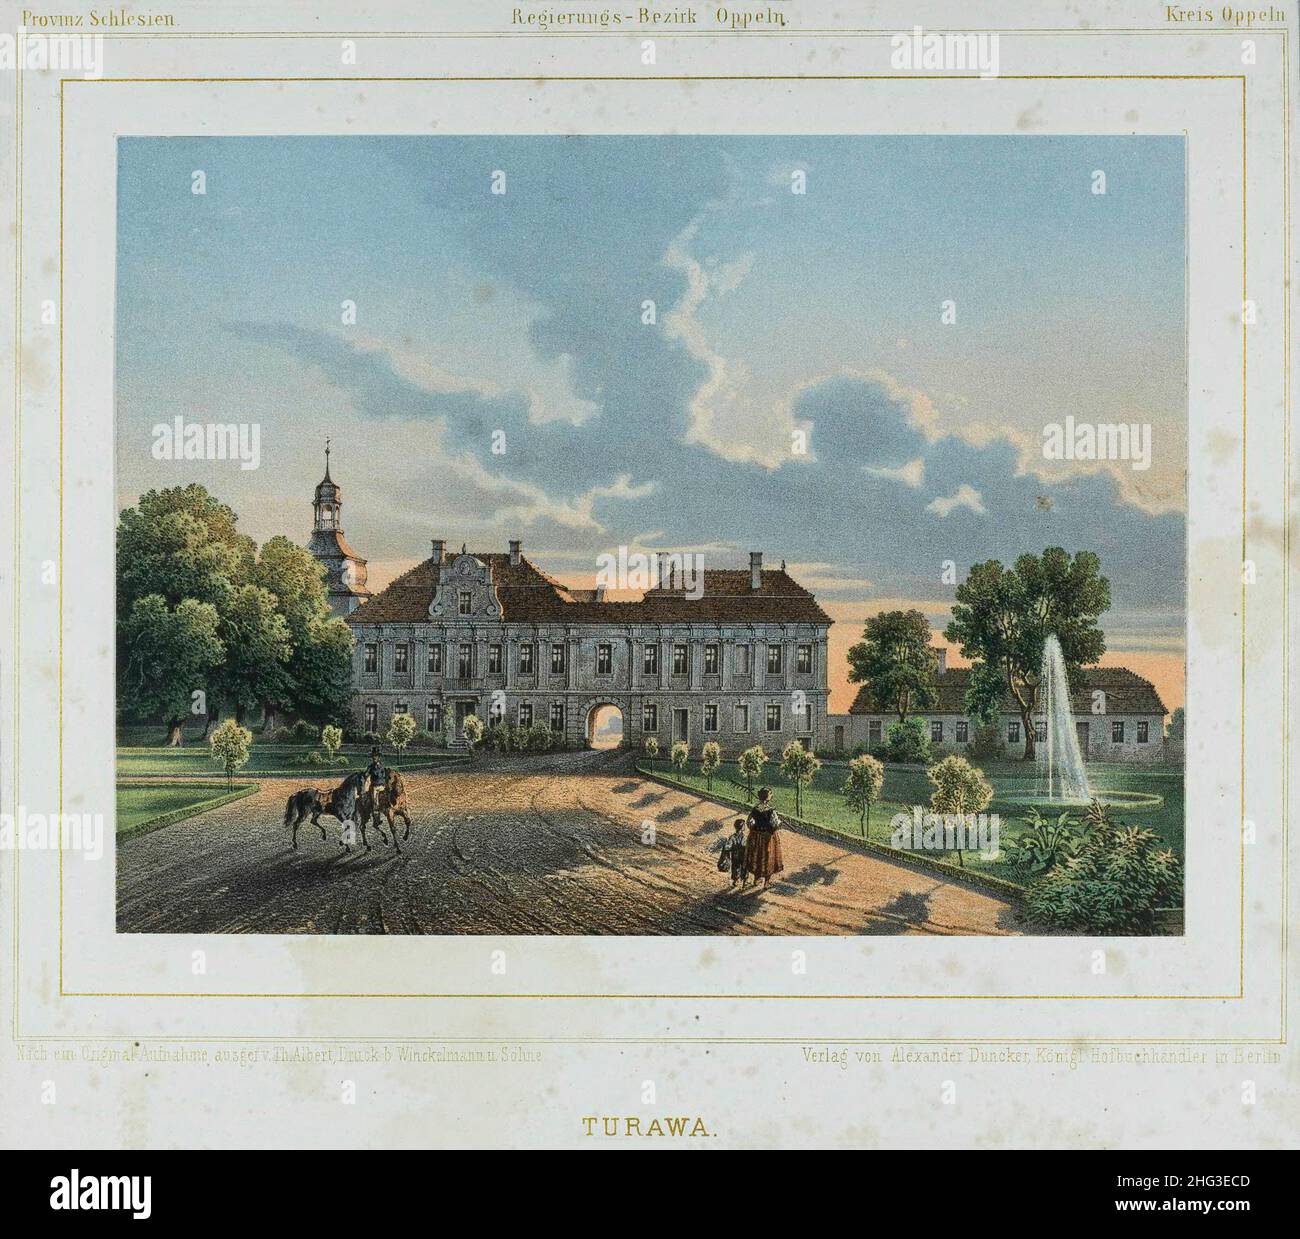 La litografia d'epoca del 19th secolo del Palazzo Turawa di Theodor Albert (1822-1867). Slesia, Polonia (1742-1945 - Prussia, Germania) Foto Stock